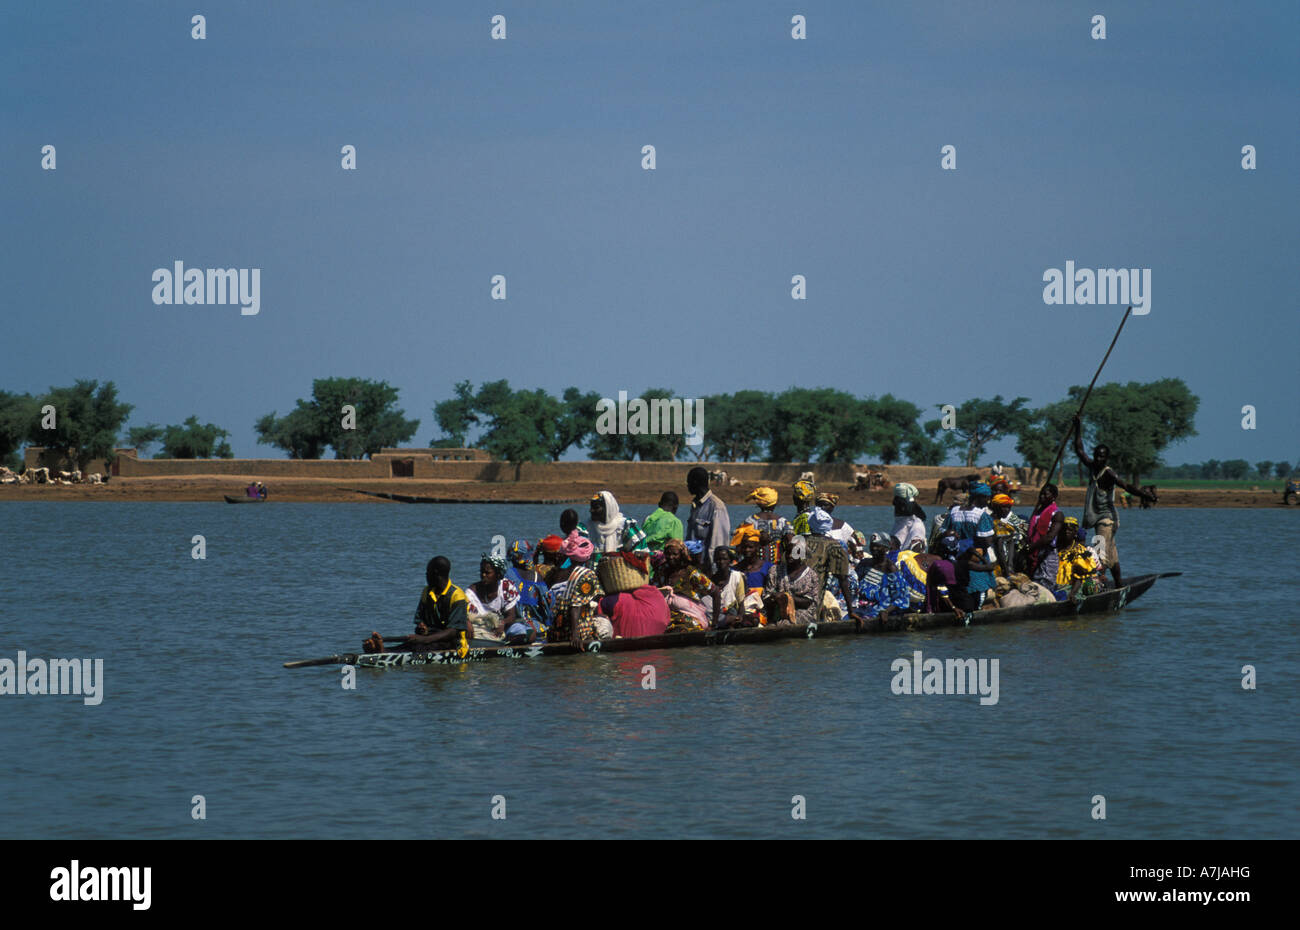 Djenné è situato su un'isola nel Niger Inland Delta. Persone attraversano l'acqua per i villaggi circostanti in piroga, Mali Foto Stock